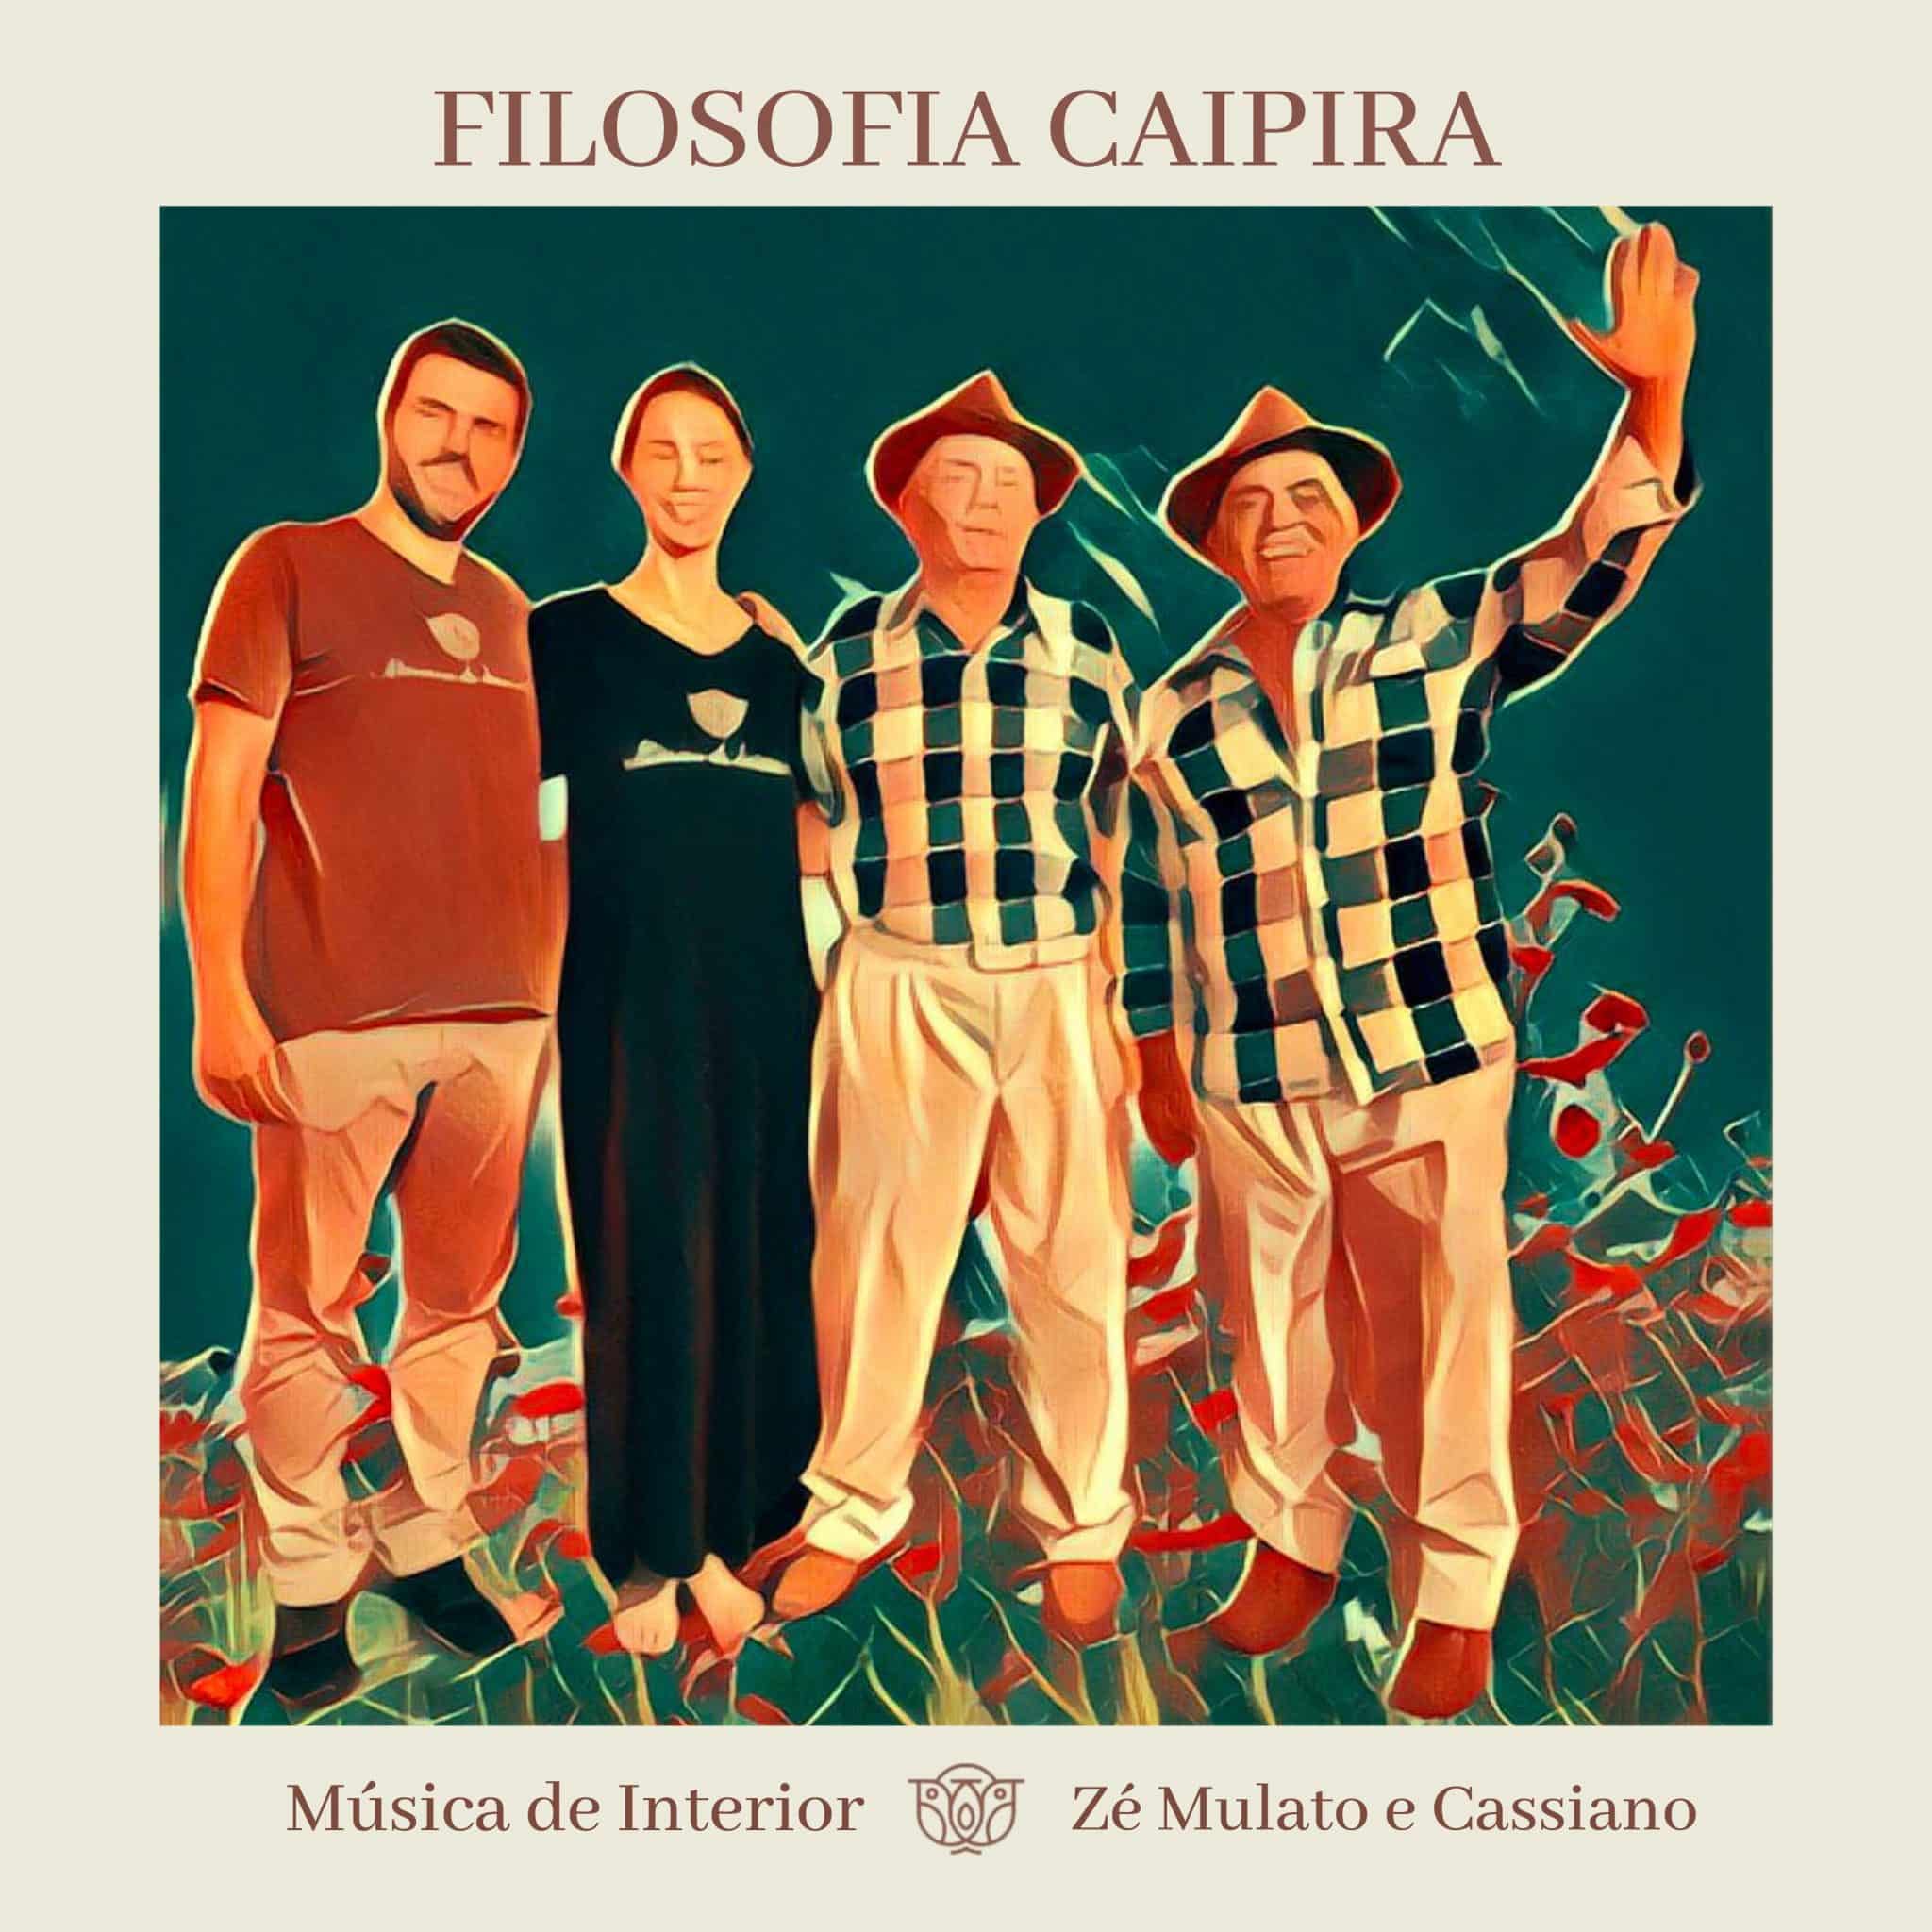 revistaprosaversoearte.com - Música de Interior lança single ‘Filosofia Caipira’, com participação de Zé Mulato e Cassiano